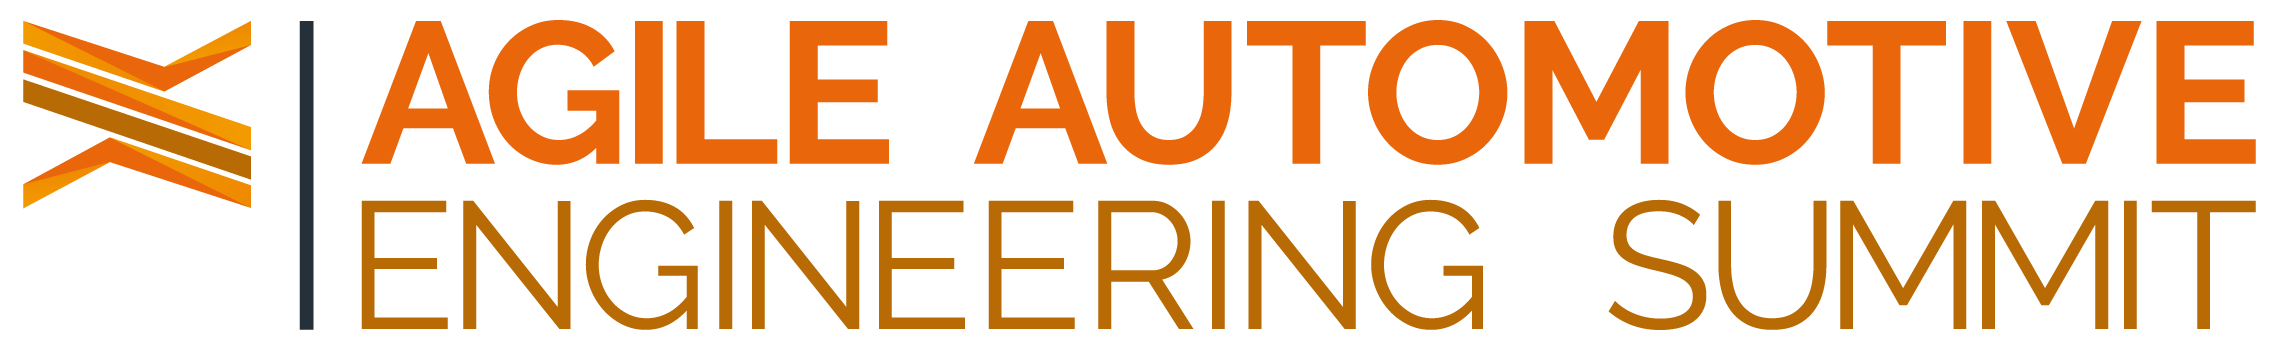 Agile Automotive Engineering Summit